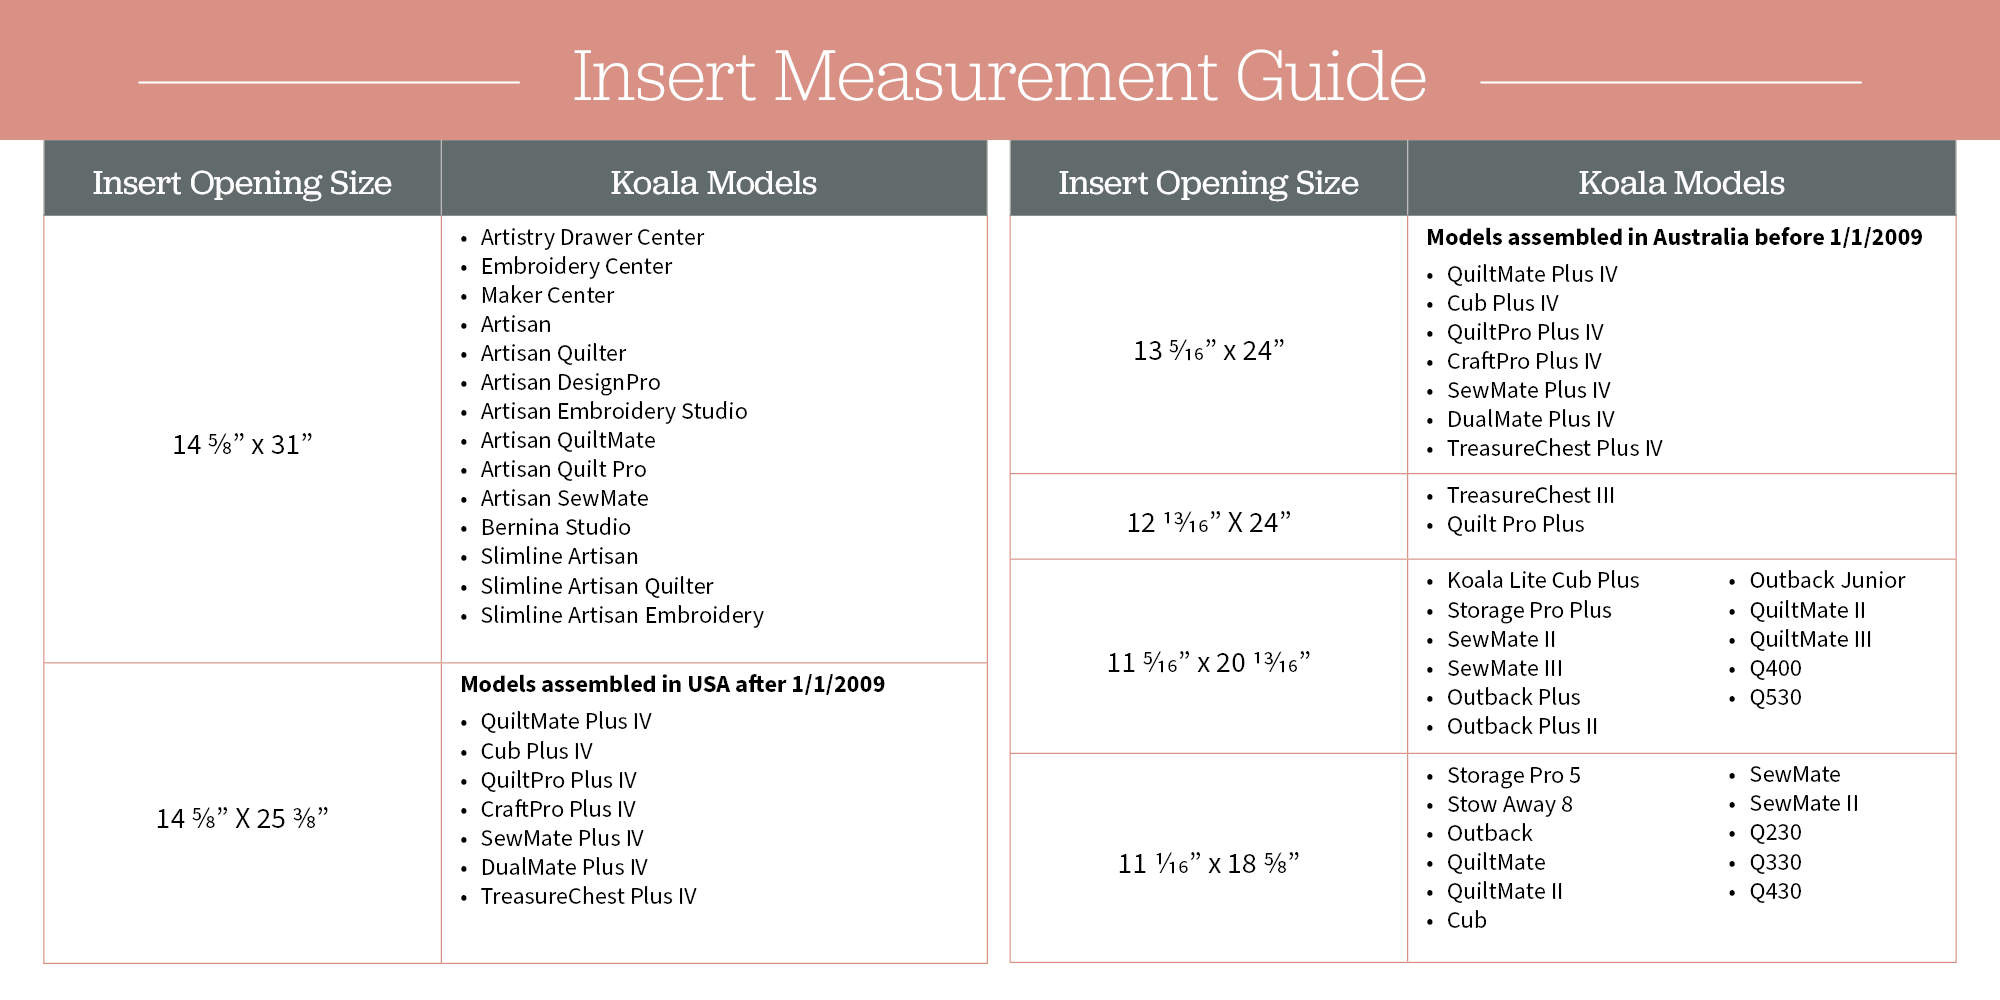 Insert Measurement Guide